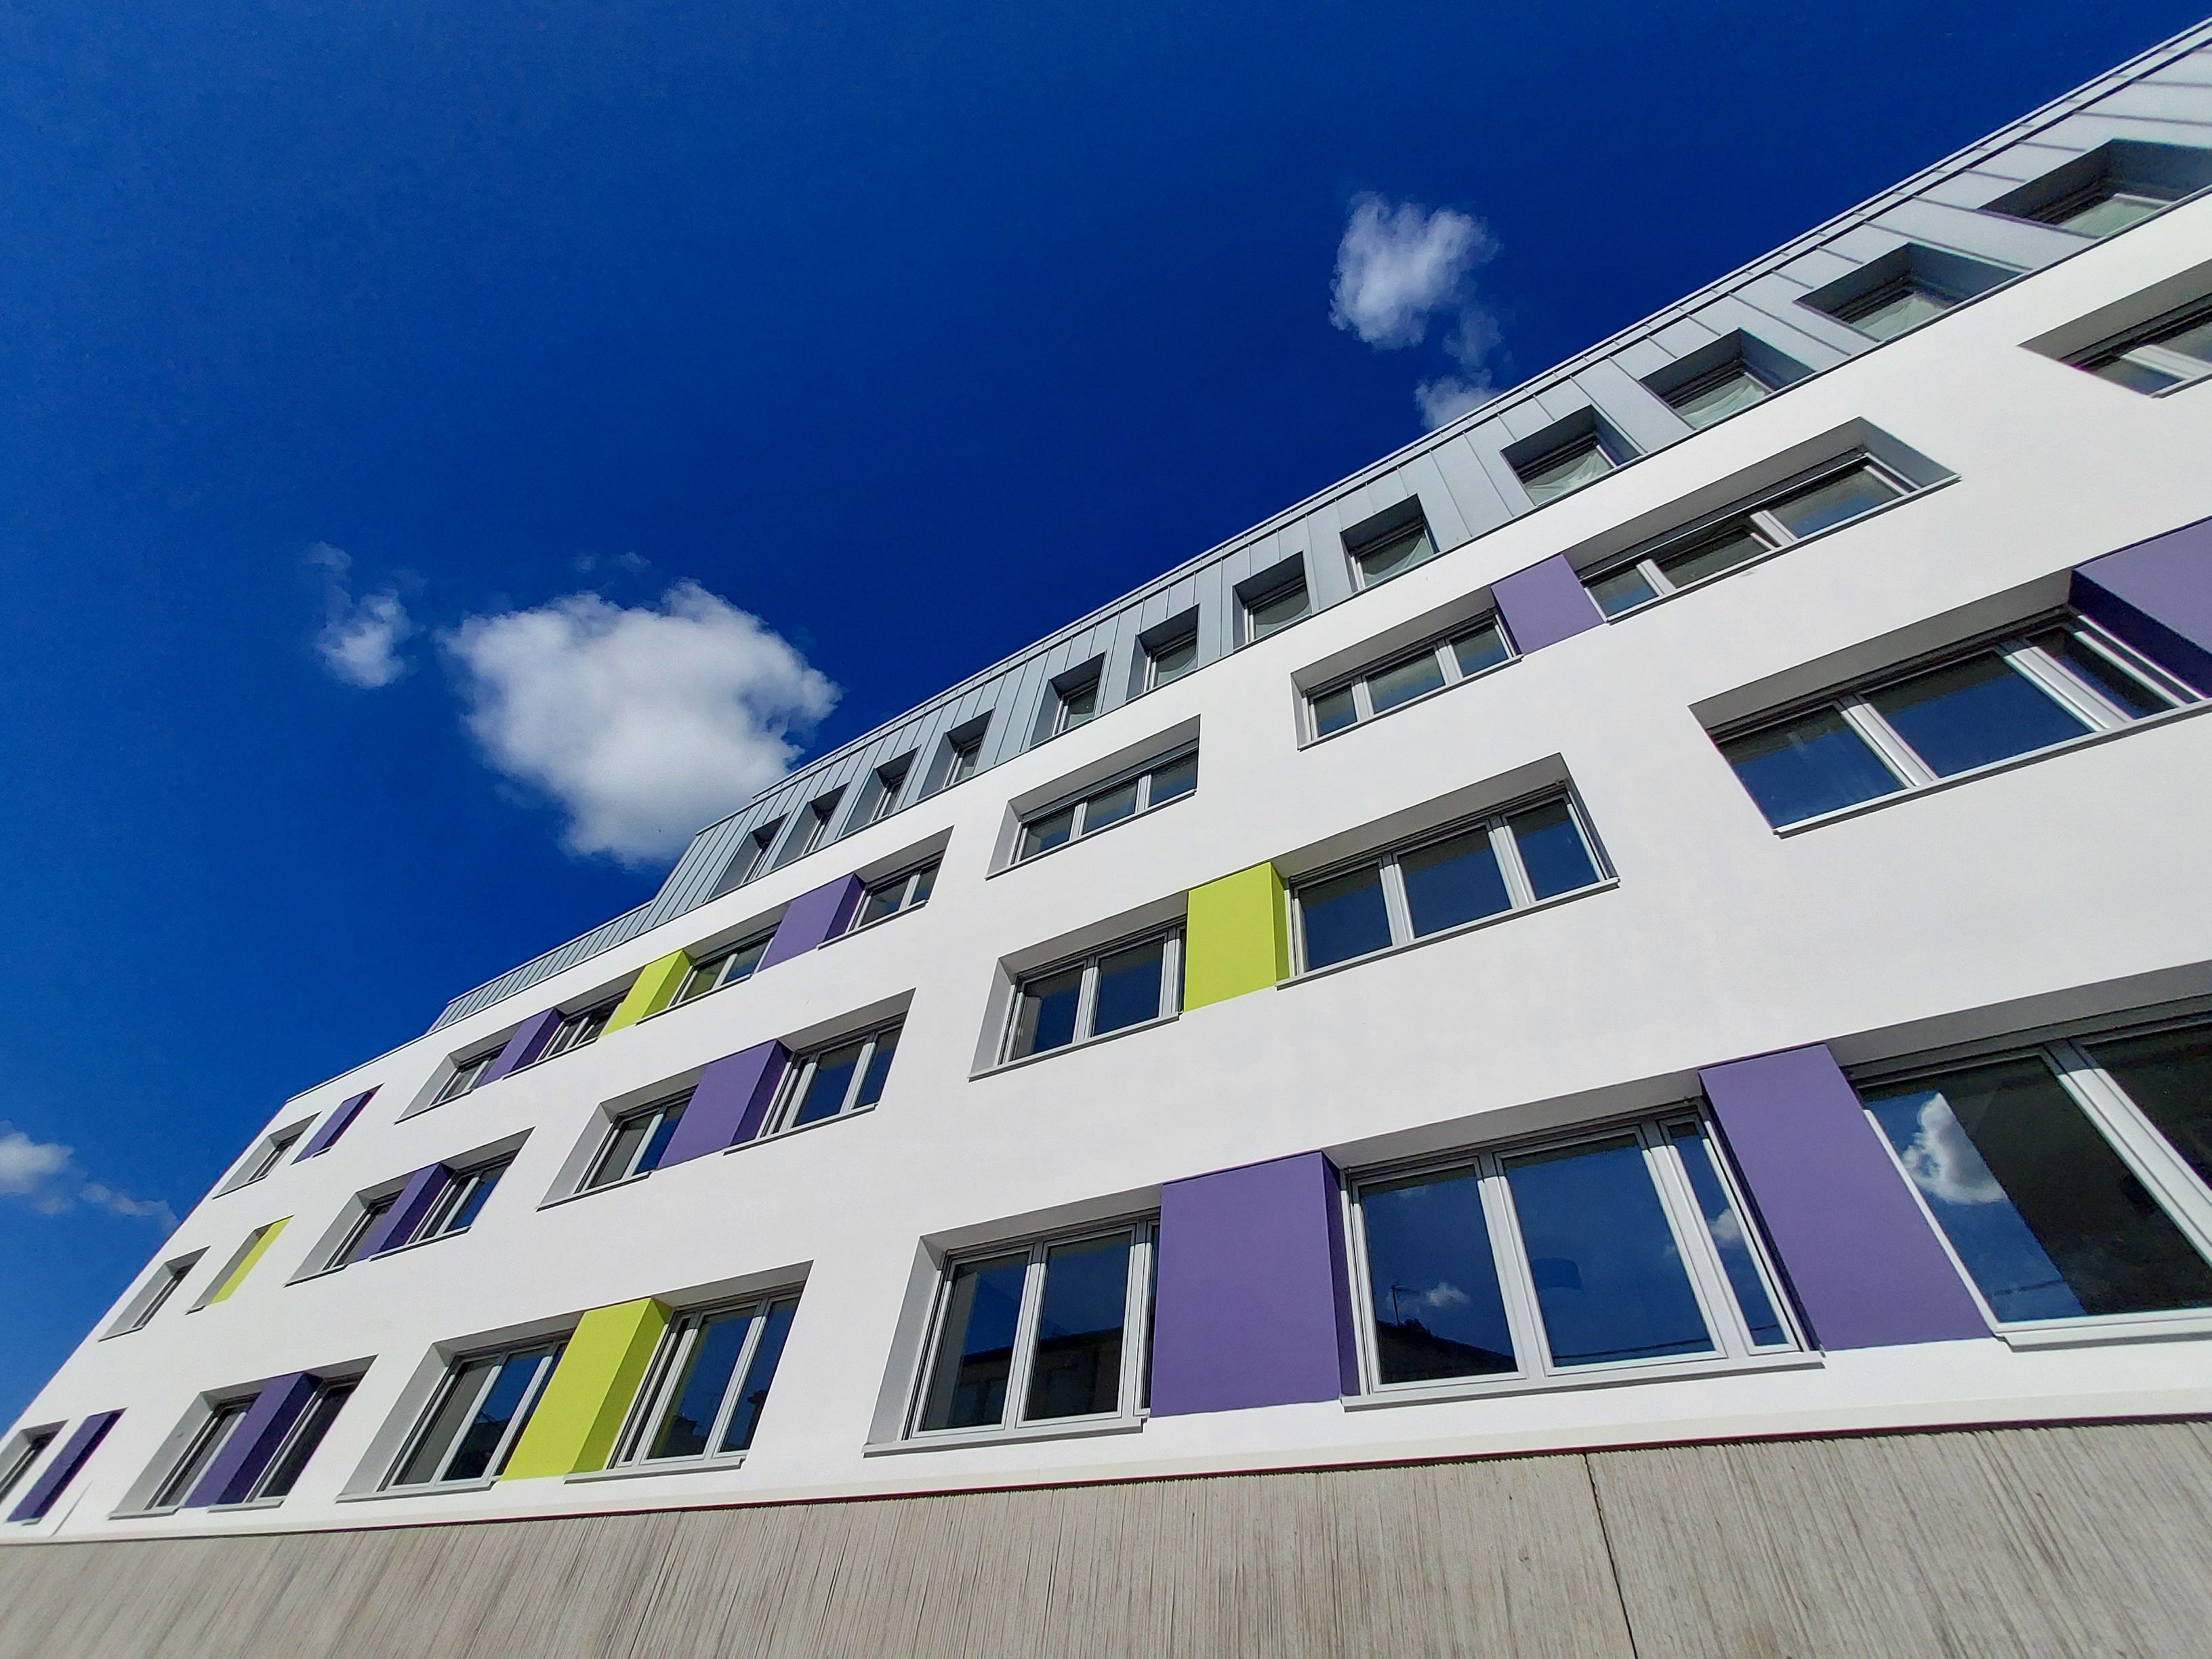 Location résidence étudiante Résidence Brest Campus Kervern à Brest - Photo 2